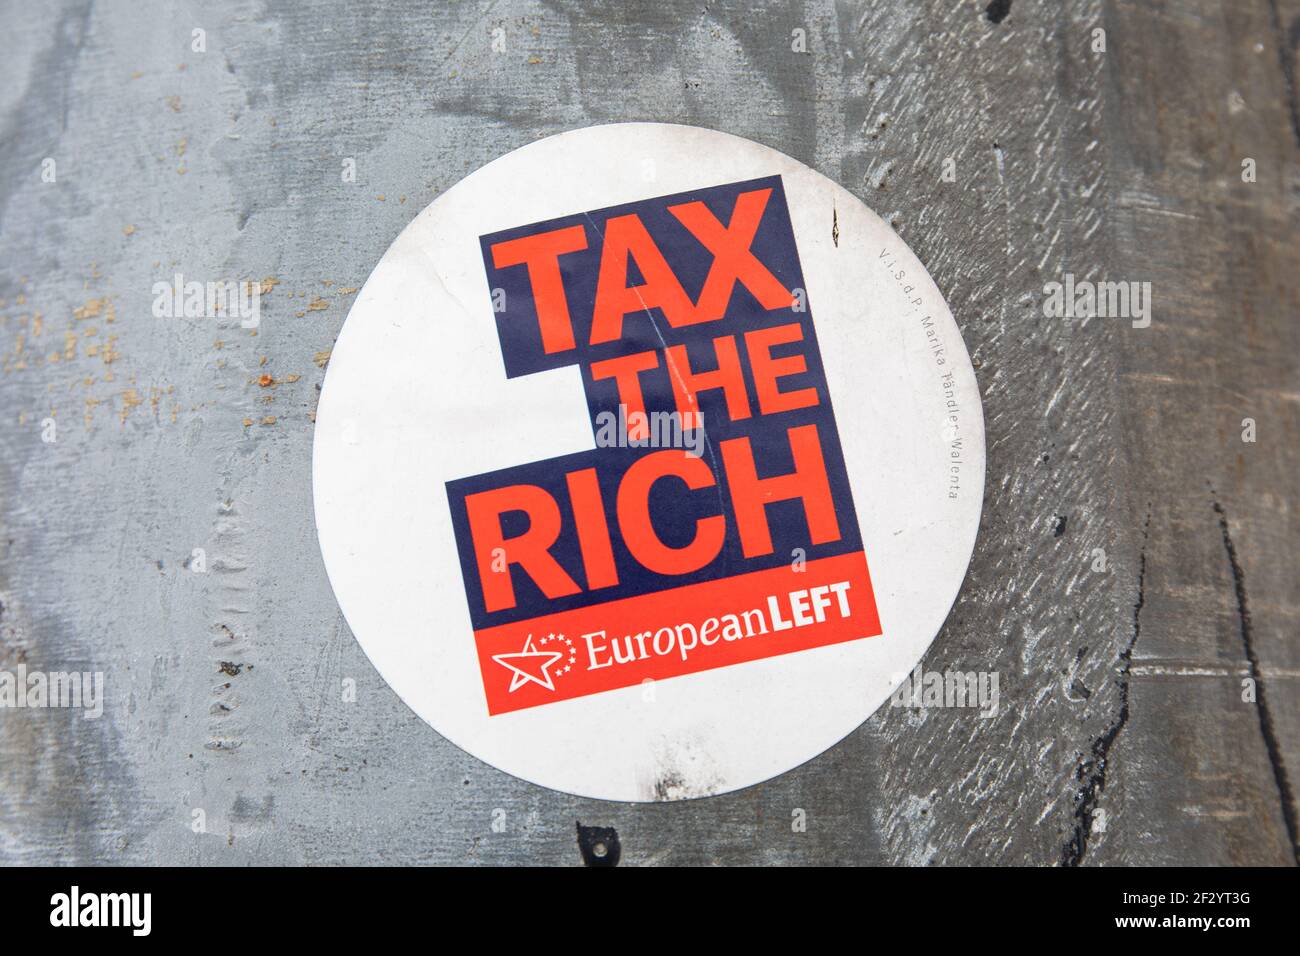 Steuern Sie die Reichen. Europäischer linker Aufkleber auf Aluminium-Straßenlichtmast im Kallio-Viertel von Helsinki, Finnland. Stockfoto